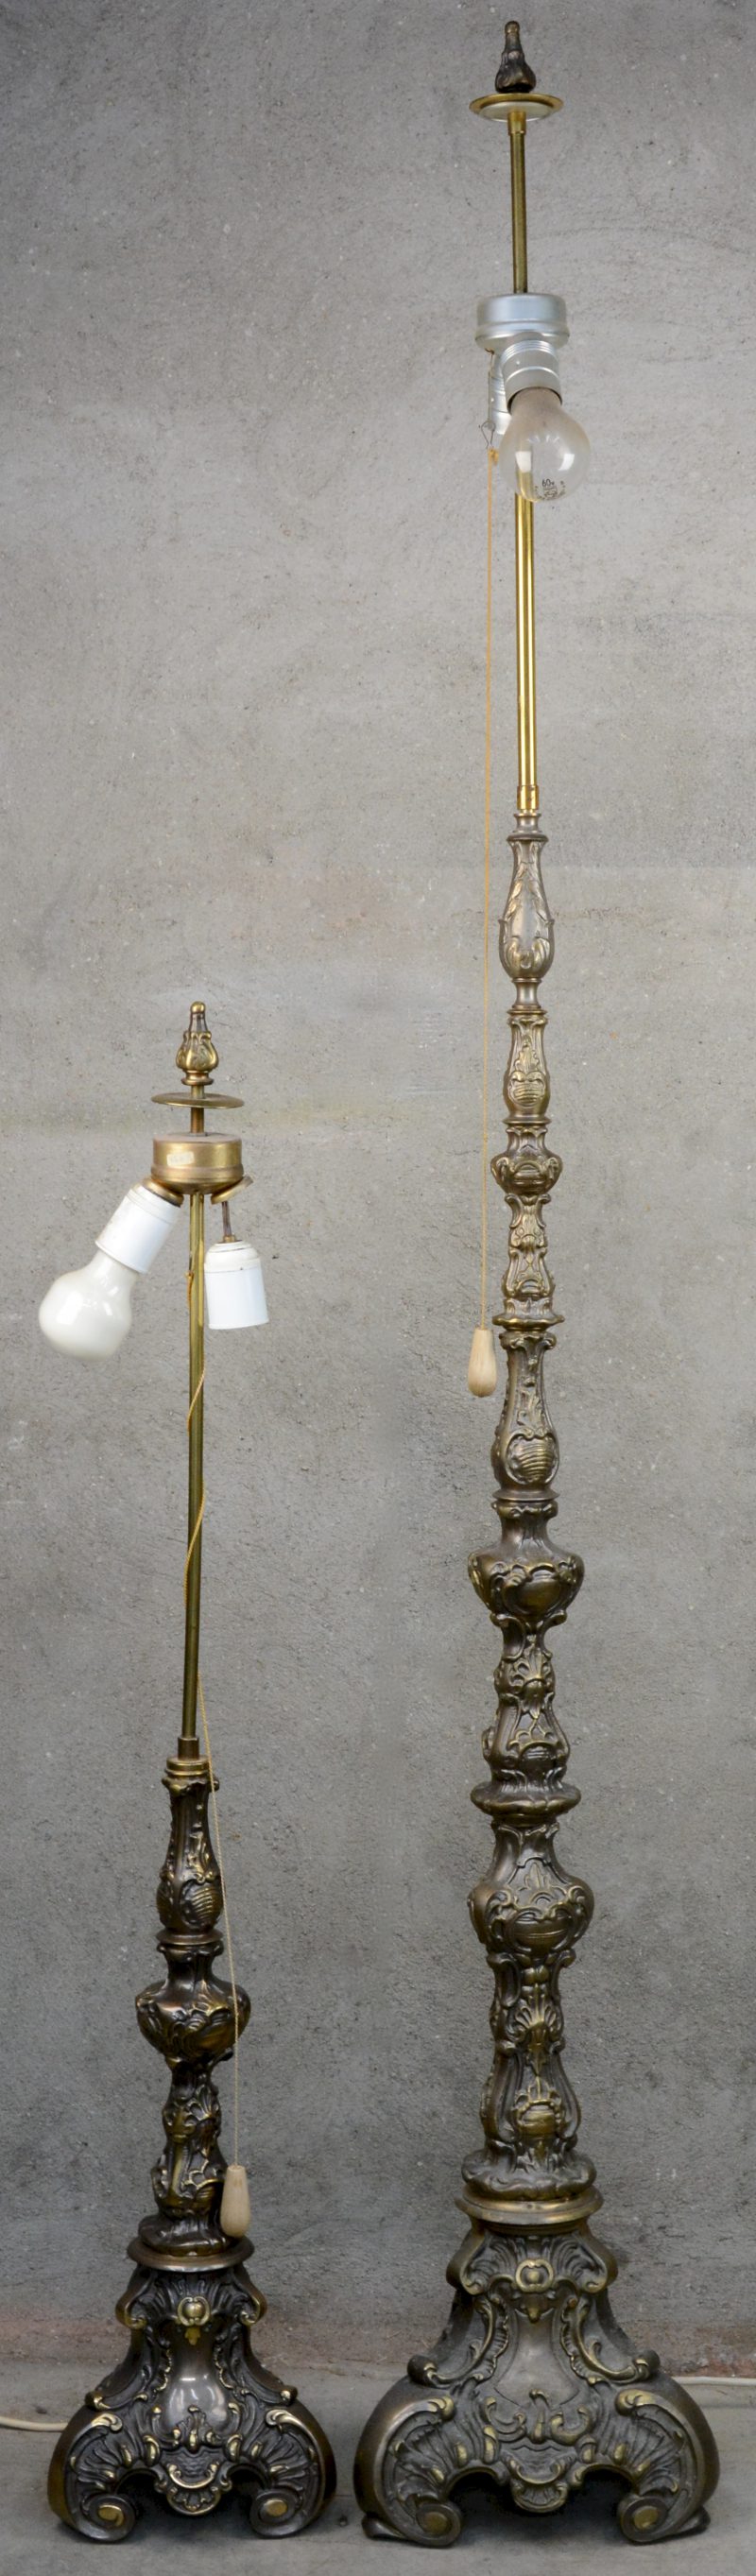 Een paar koperen kandelaars in barokke stijl, gemonteerd als kamerlamp.